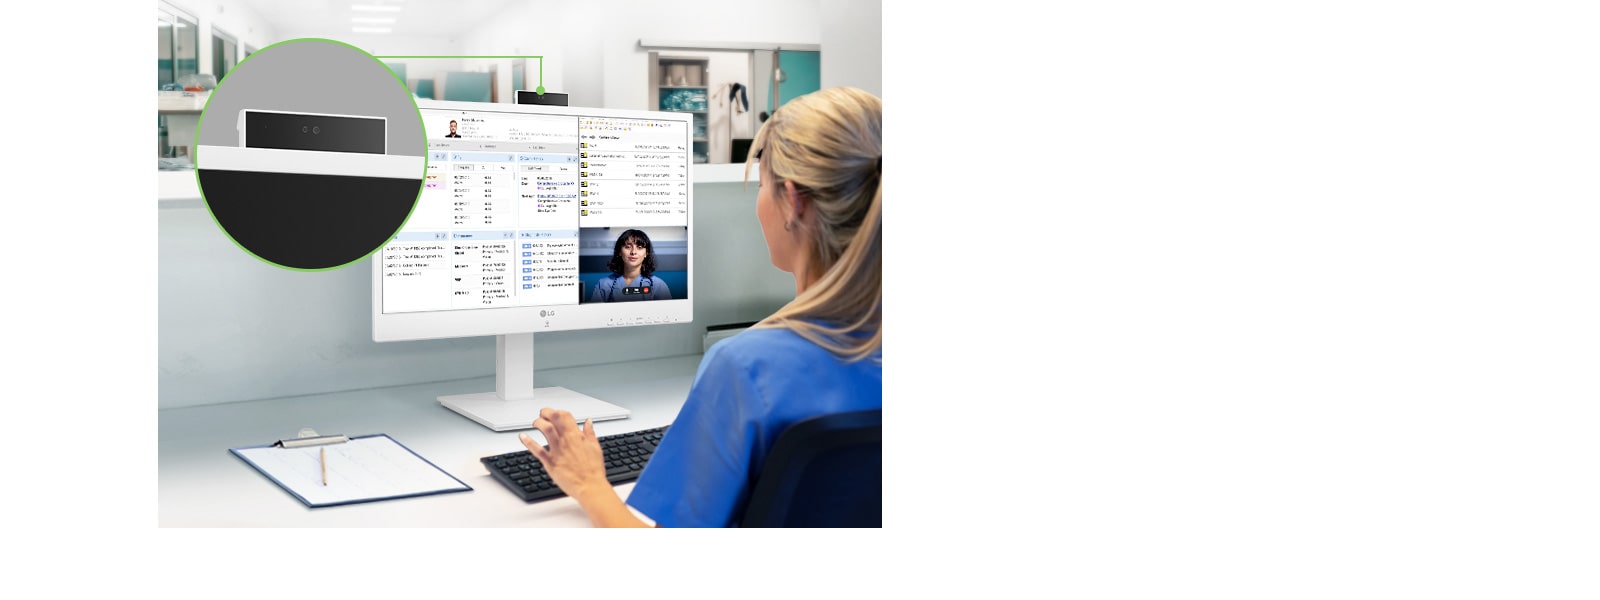 De ingebouwde push-pull Full HD webcam met levendige en heldere beelden ondersteunt medische zorg op afstand en videoconferenties.